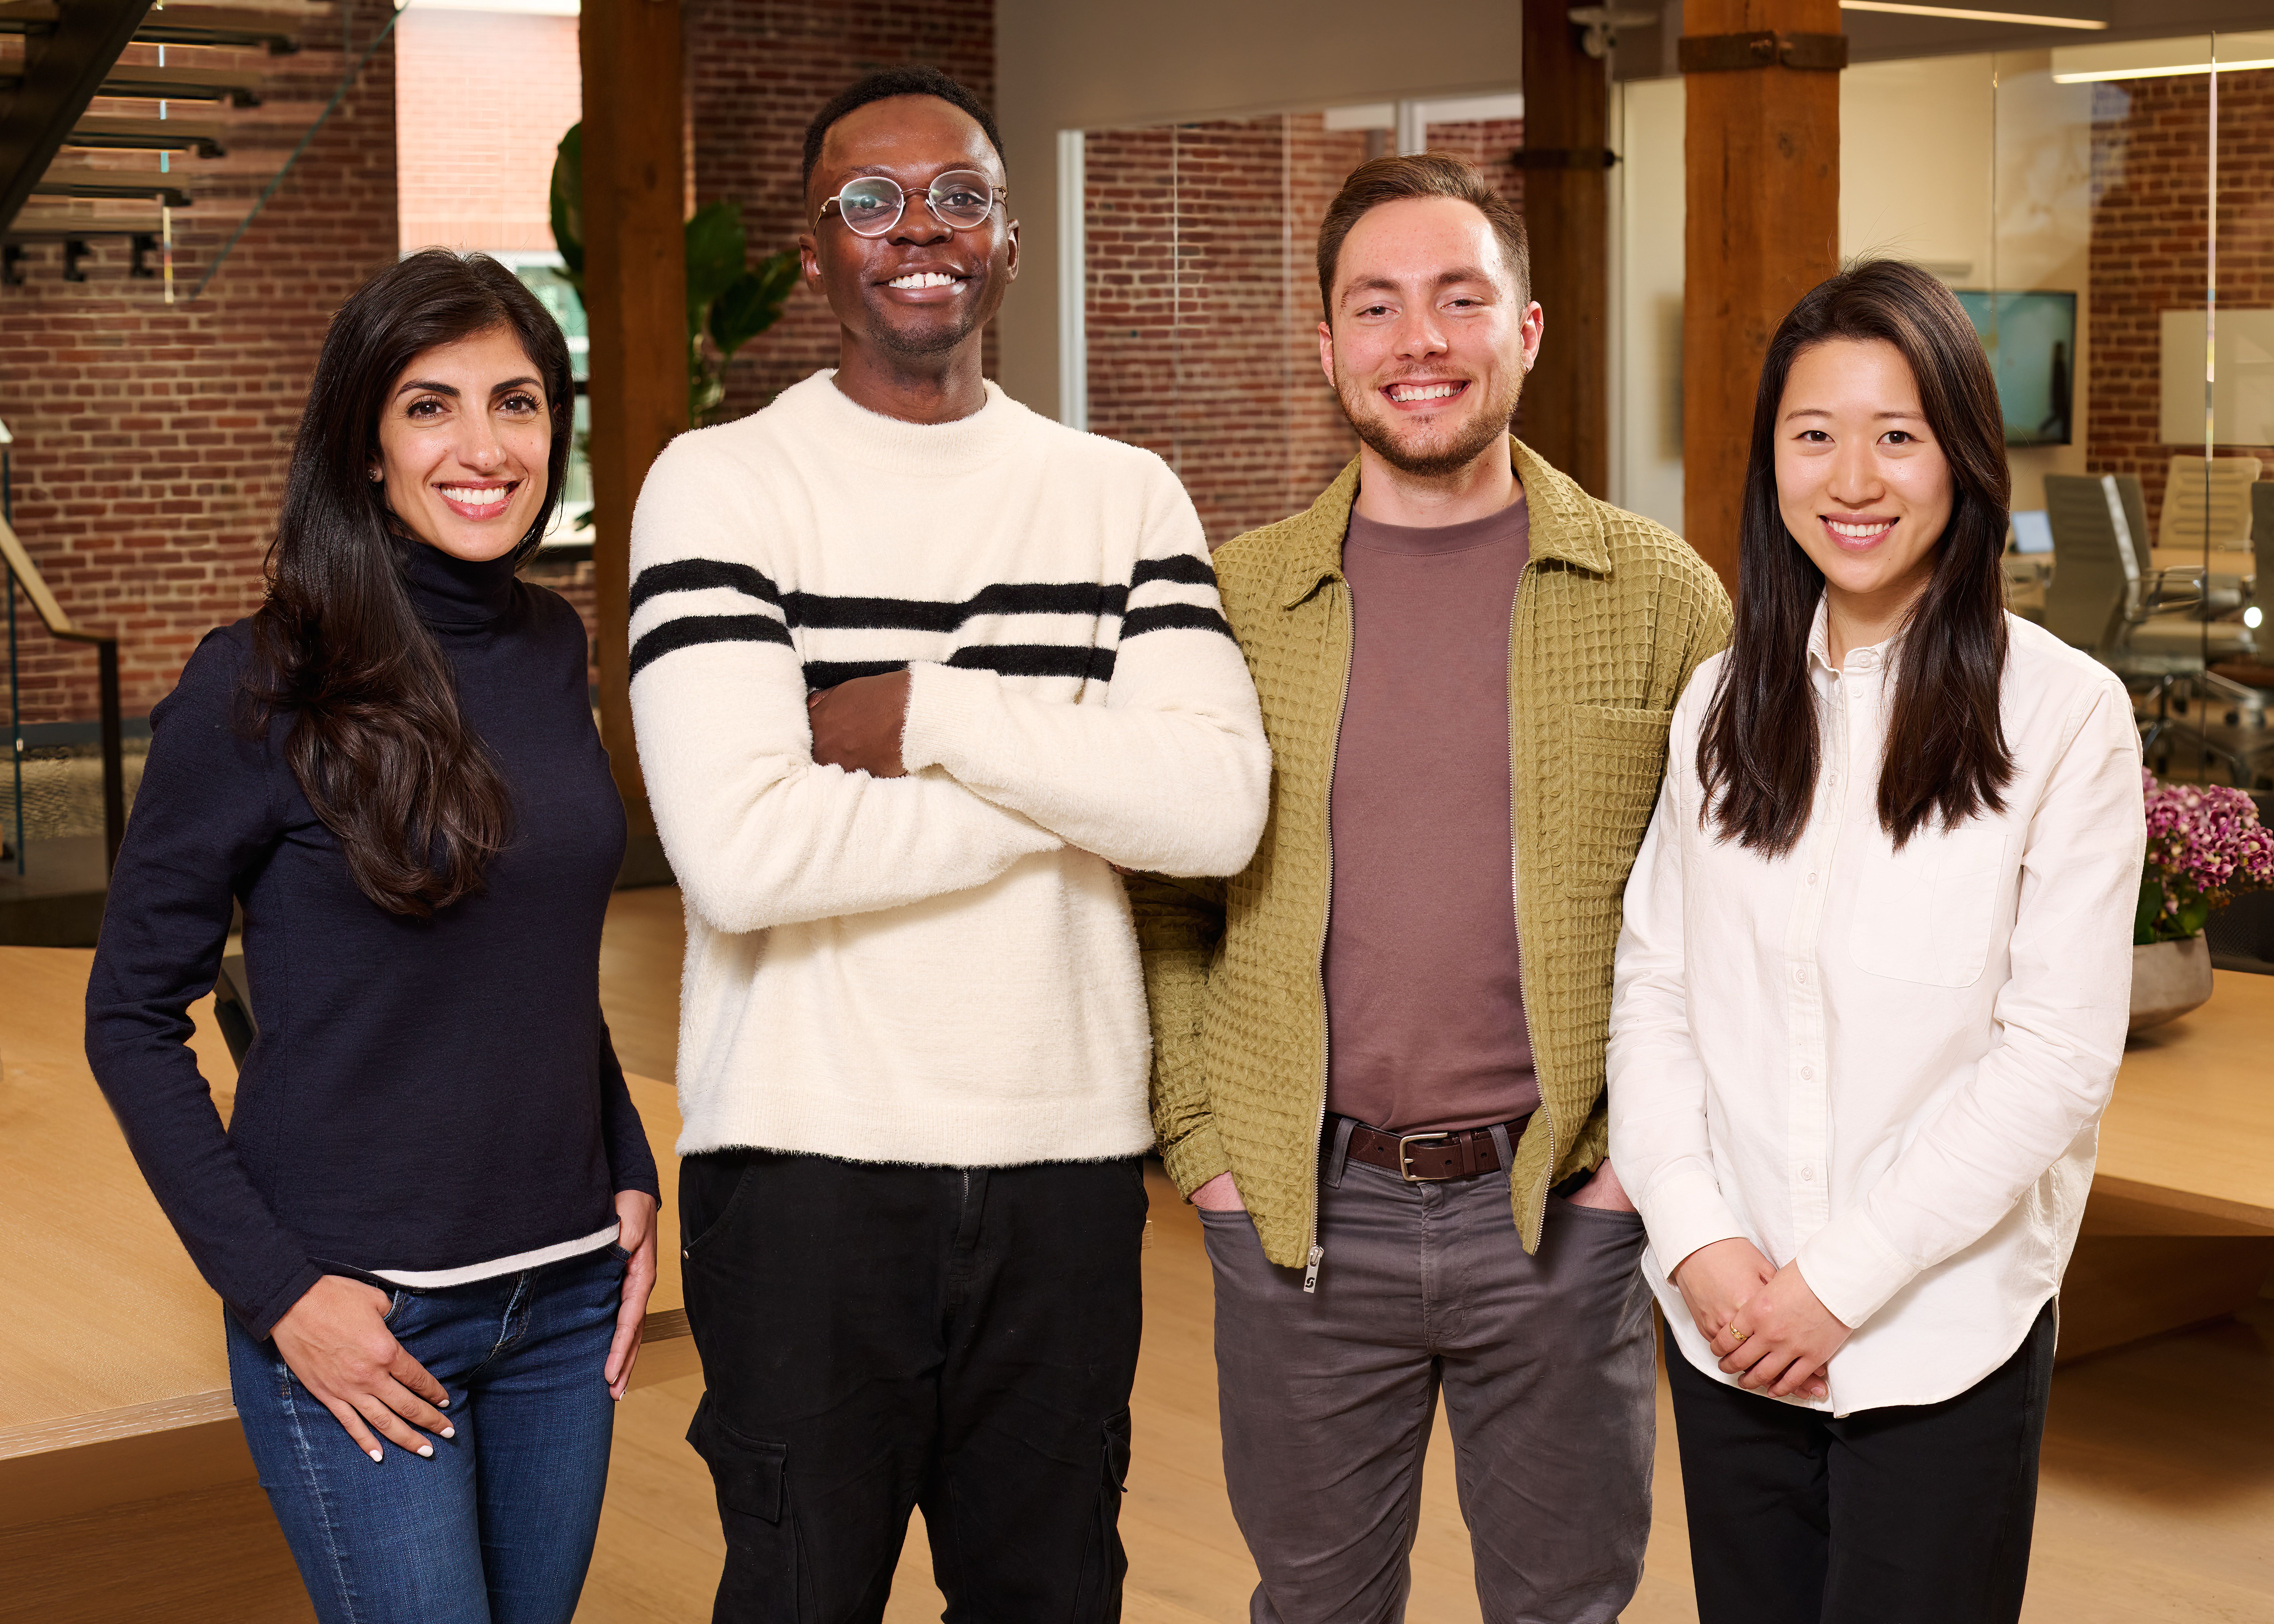 Index Ventures Partner Nina Achadjian, Vizcom co-founders Jordan Taylor and Kaelan Richards, and Index Ventures Partner Cat Wu.